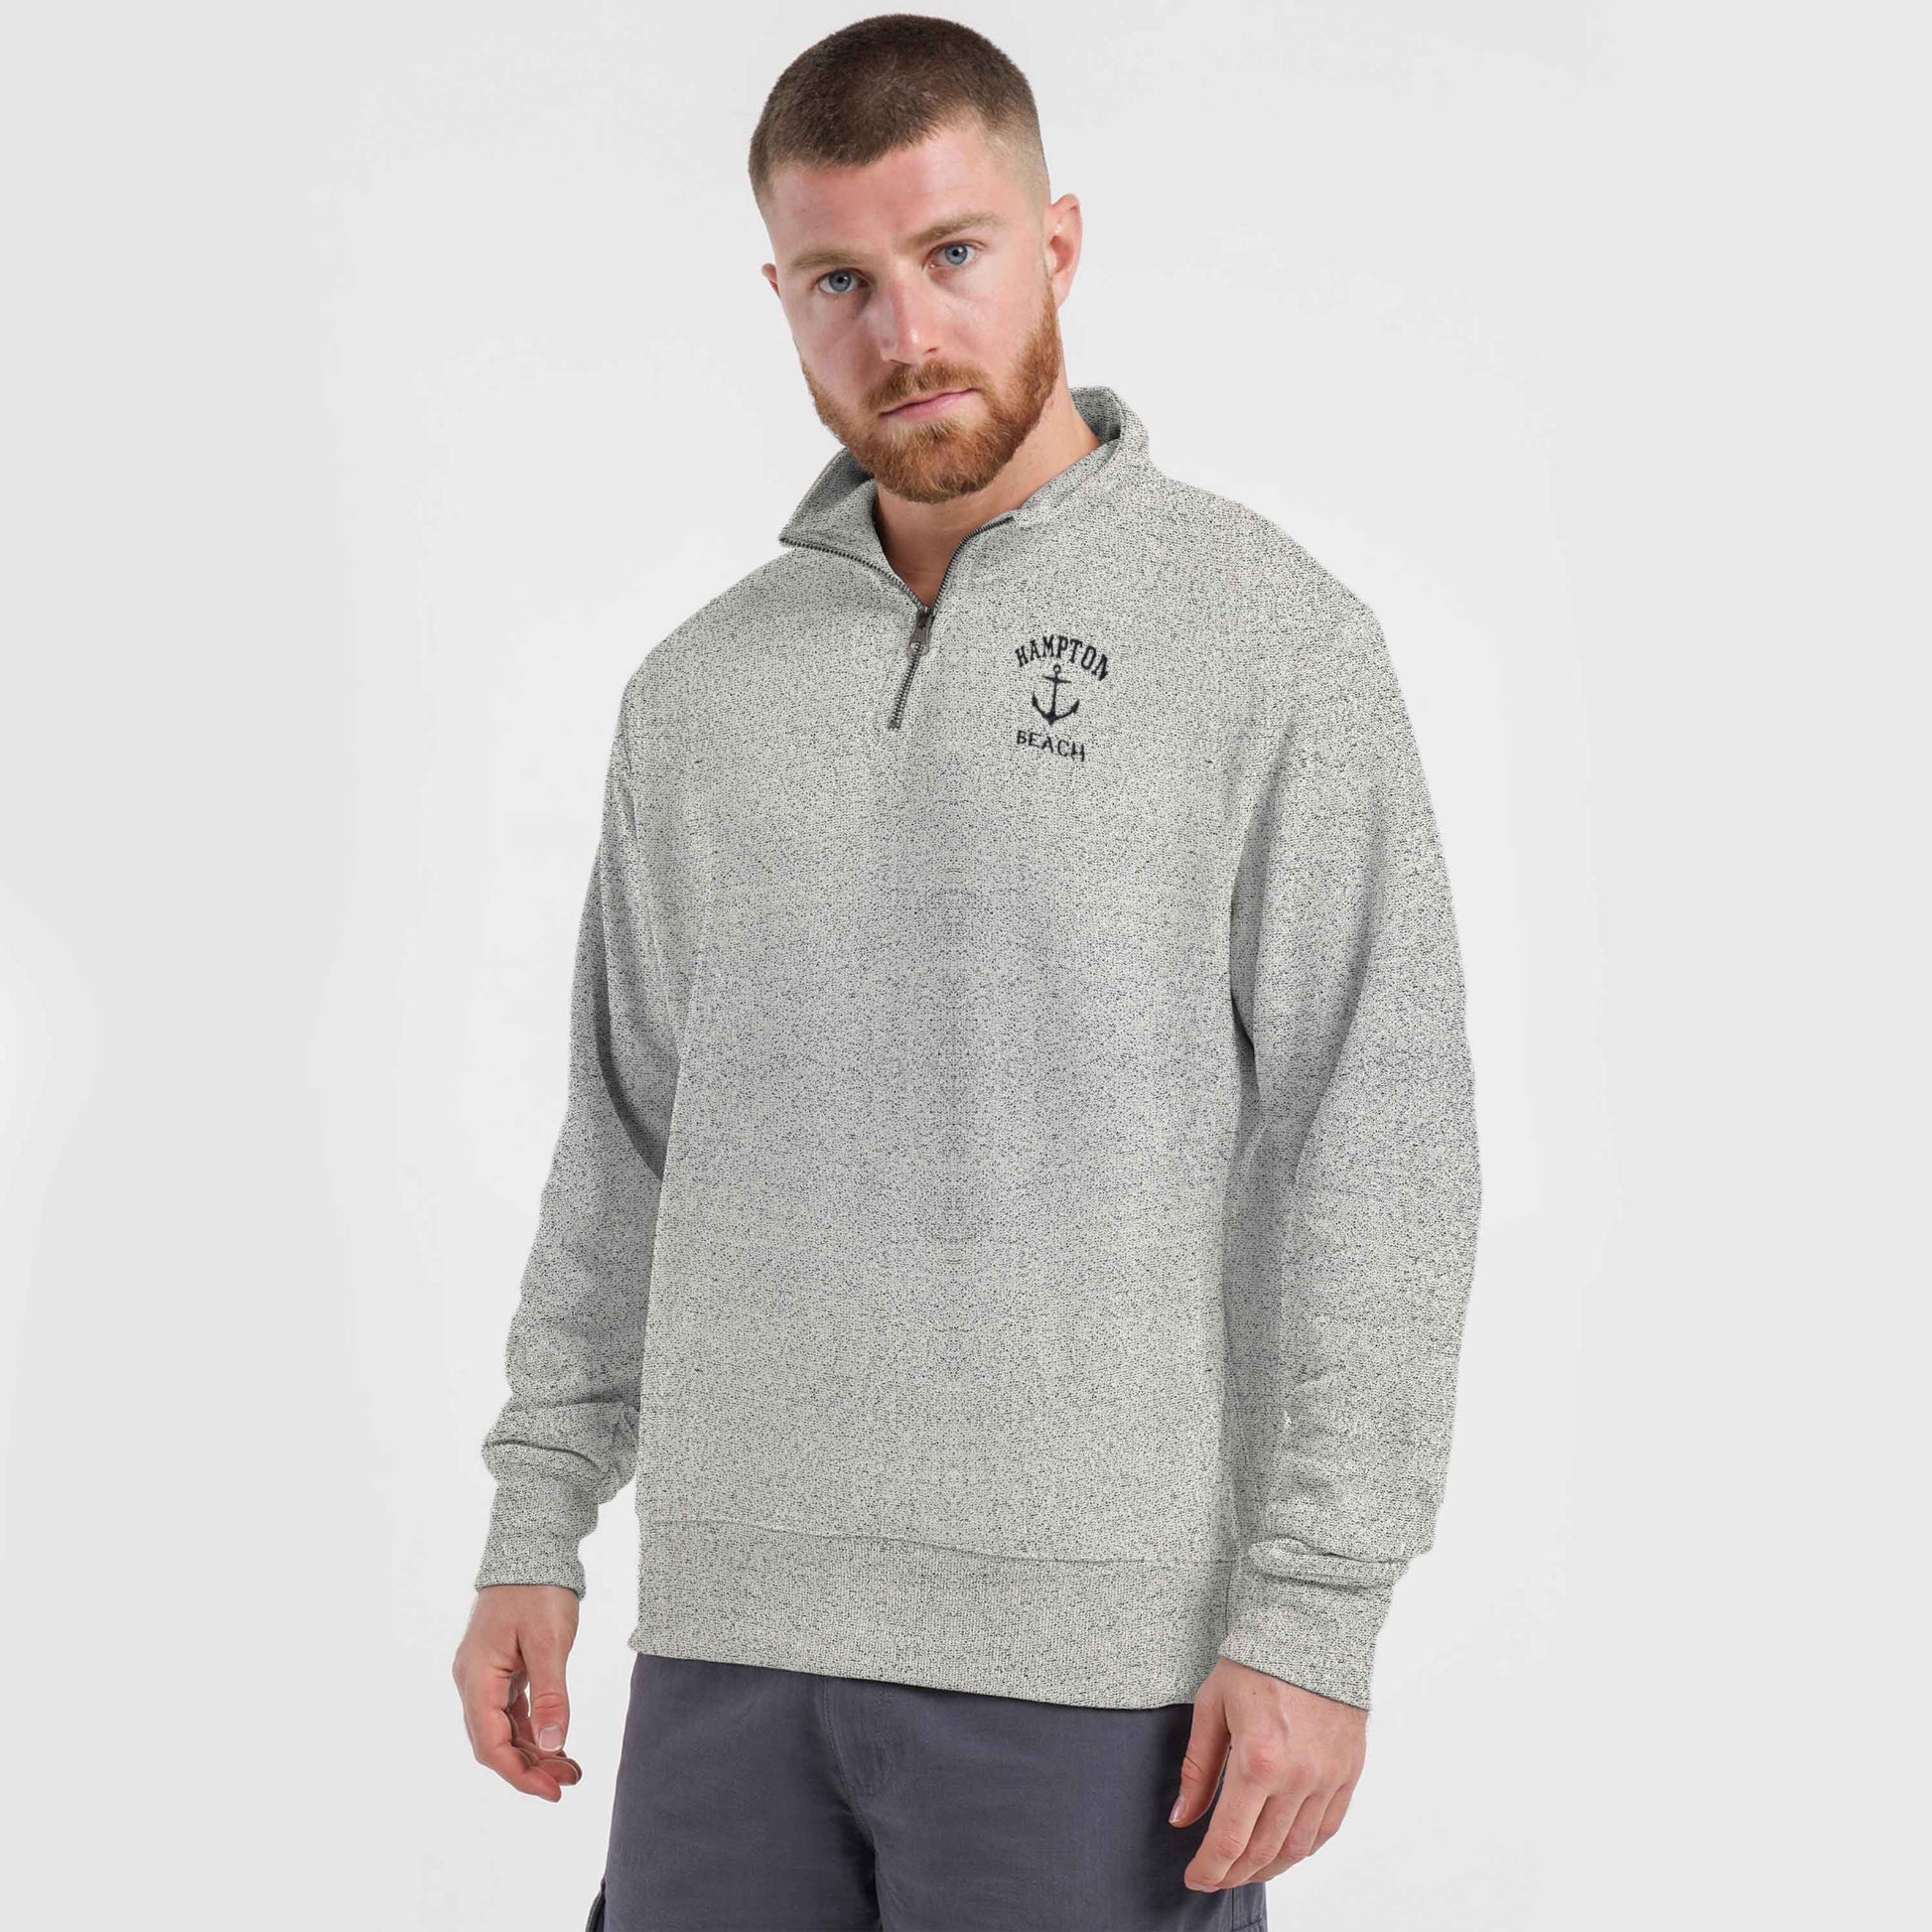 Men's Quarter Zipper Embroidered Terry Sweat Shirt Men's Sweat Shirt First Choice Grey Cape Cod XS